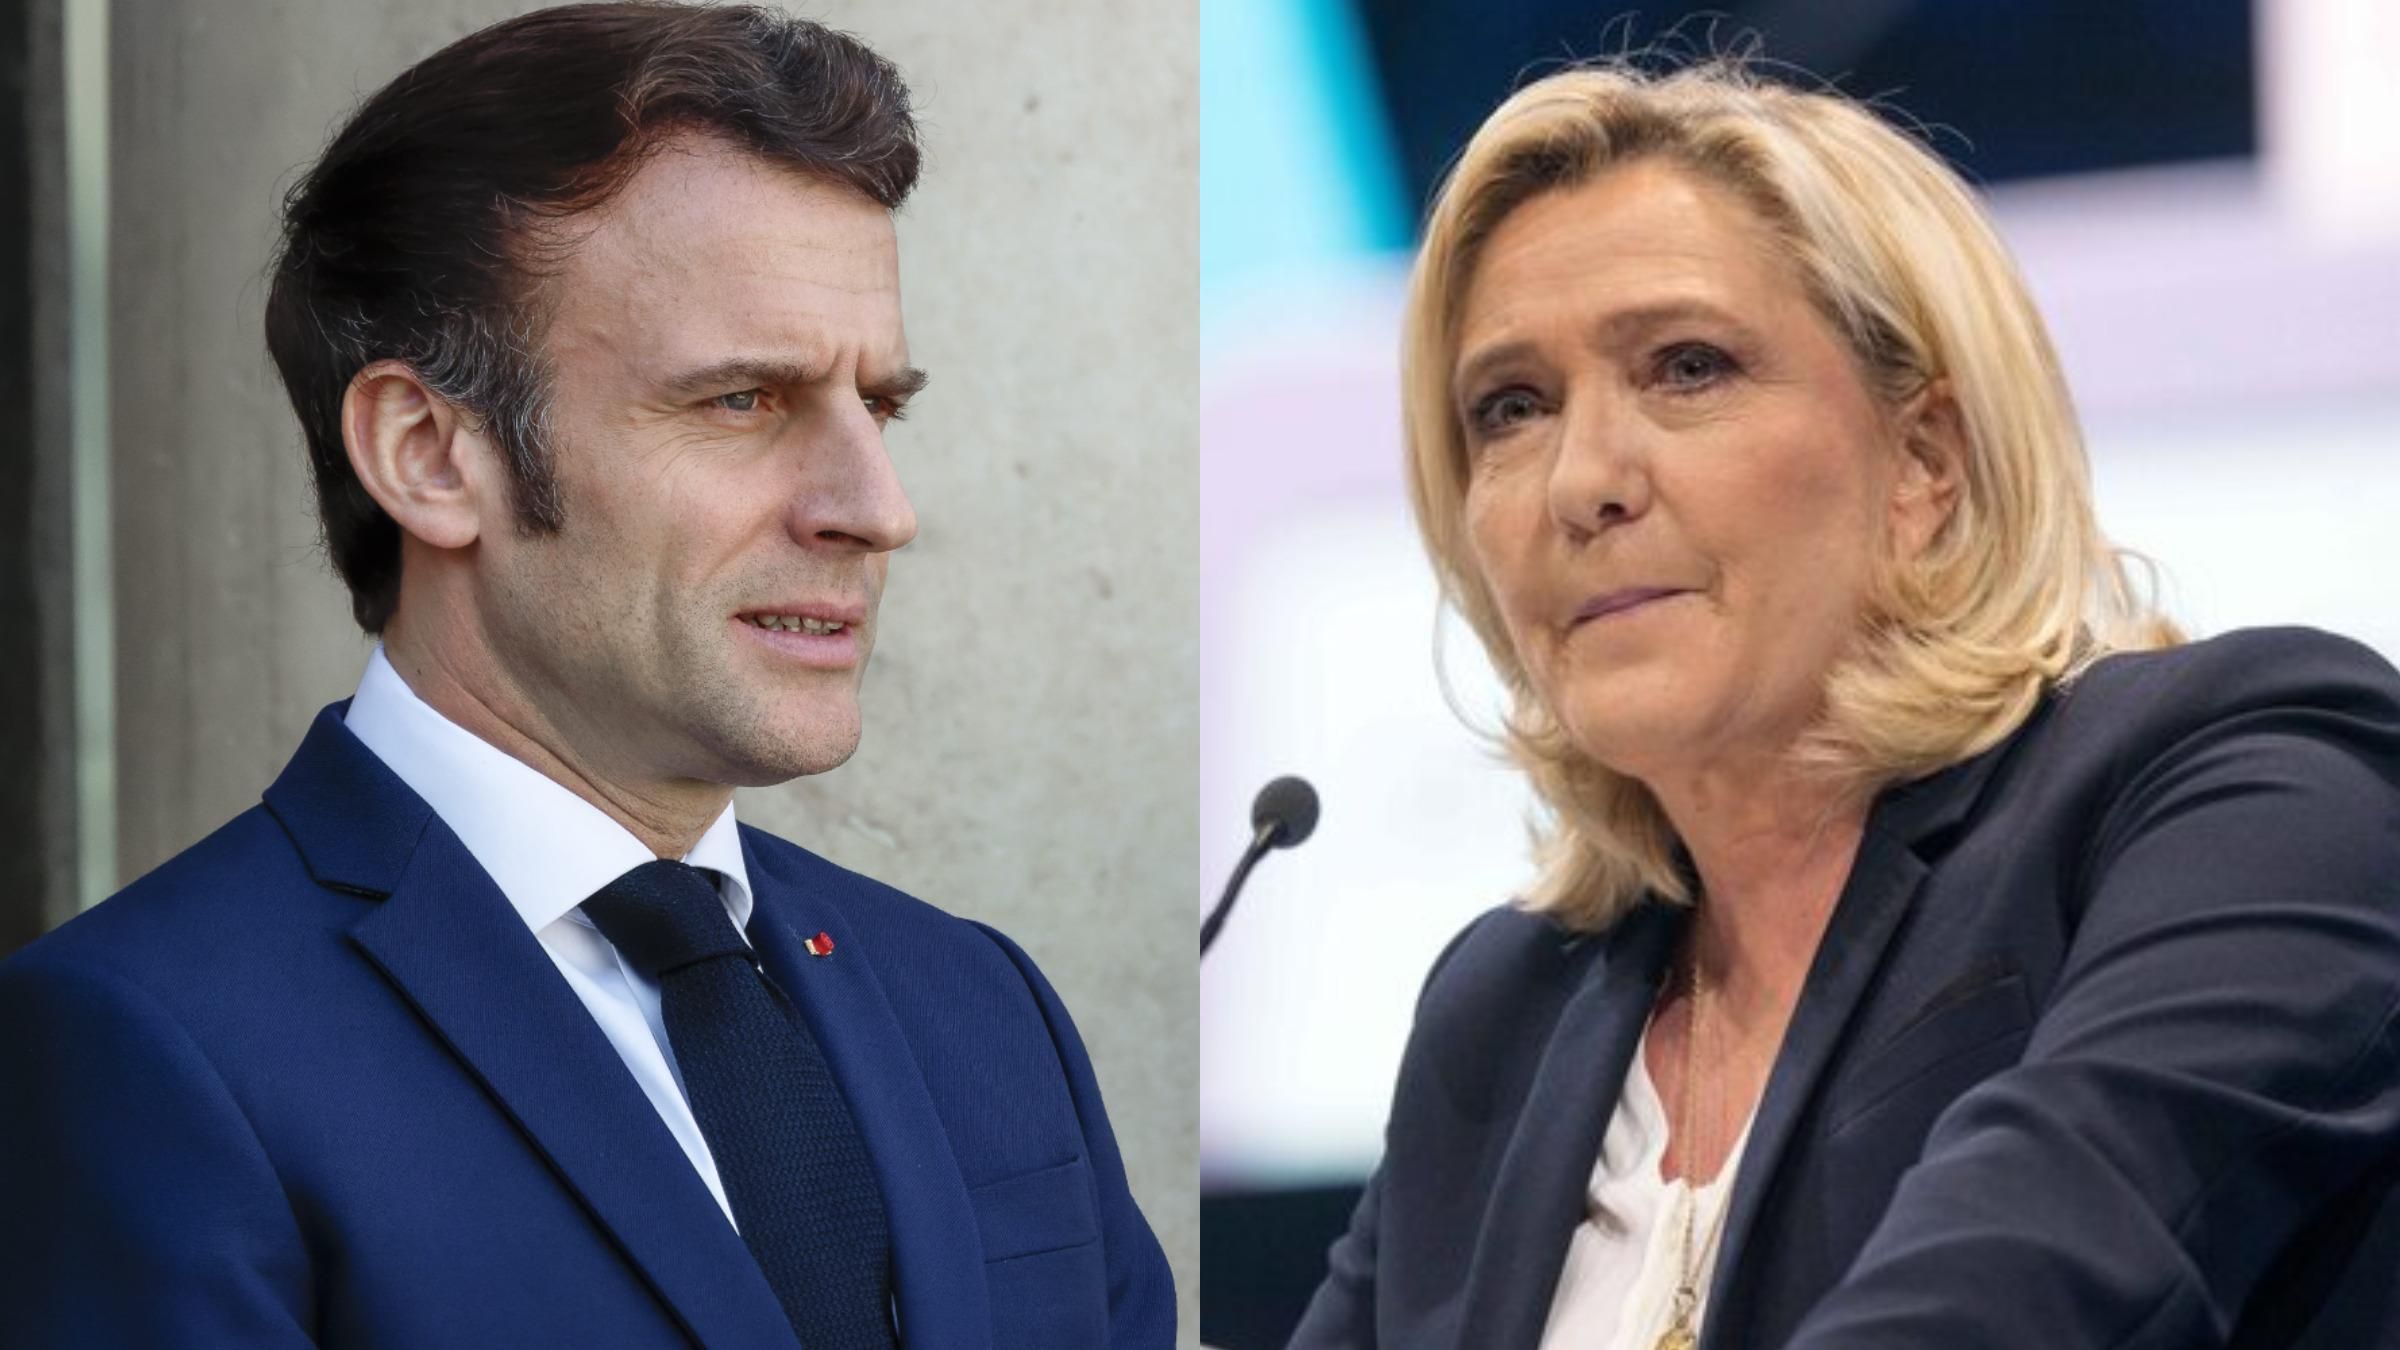 Війна зашкодила і Макрону, і Ле Пен, – політолог про вибори у Франції - 24 Канал